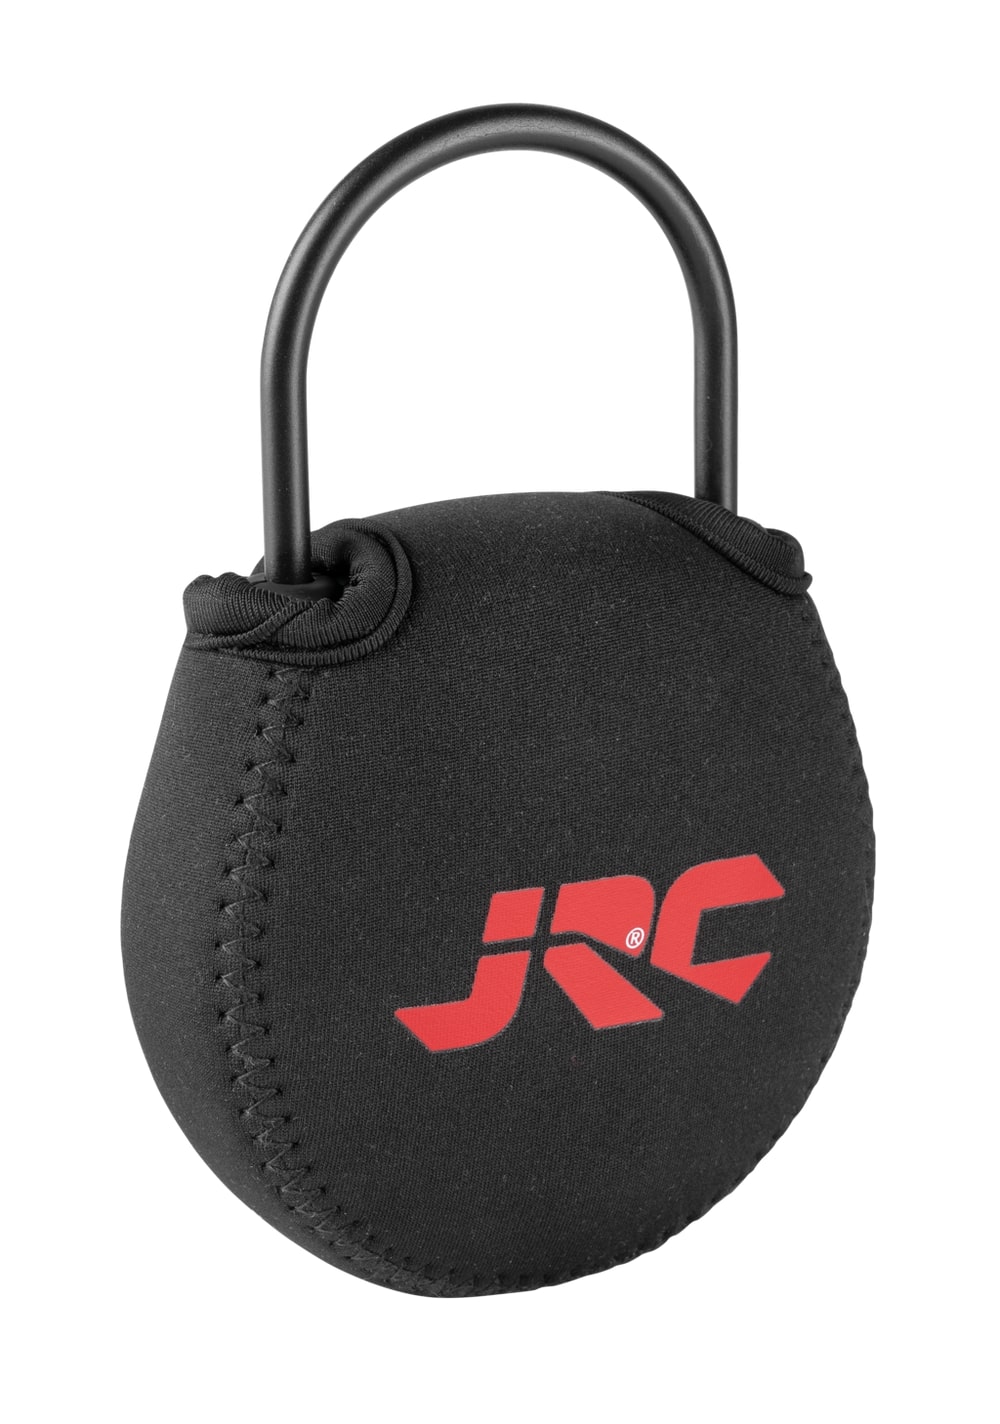 JRC Defender Digital Scale 30kg (65lb)